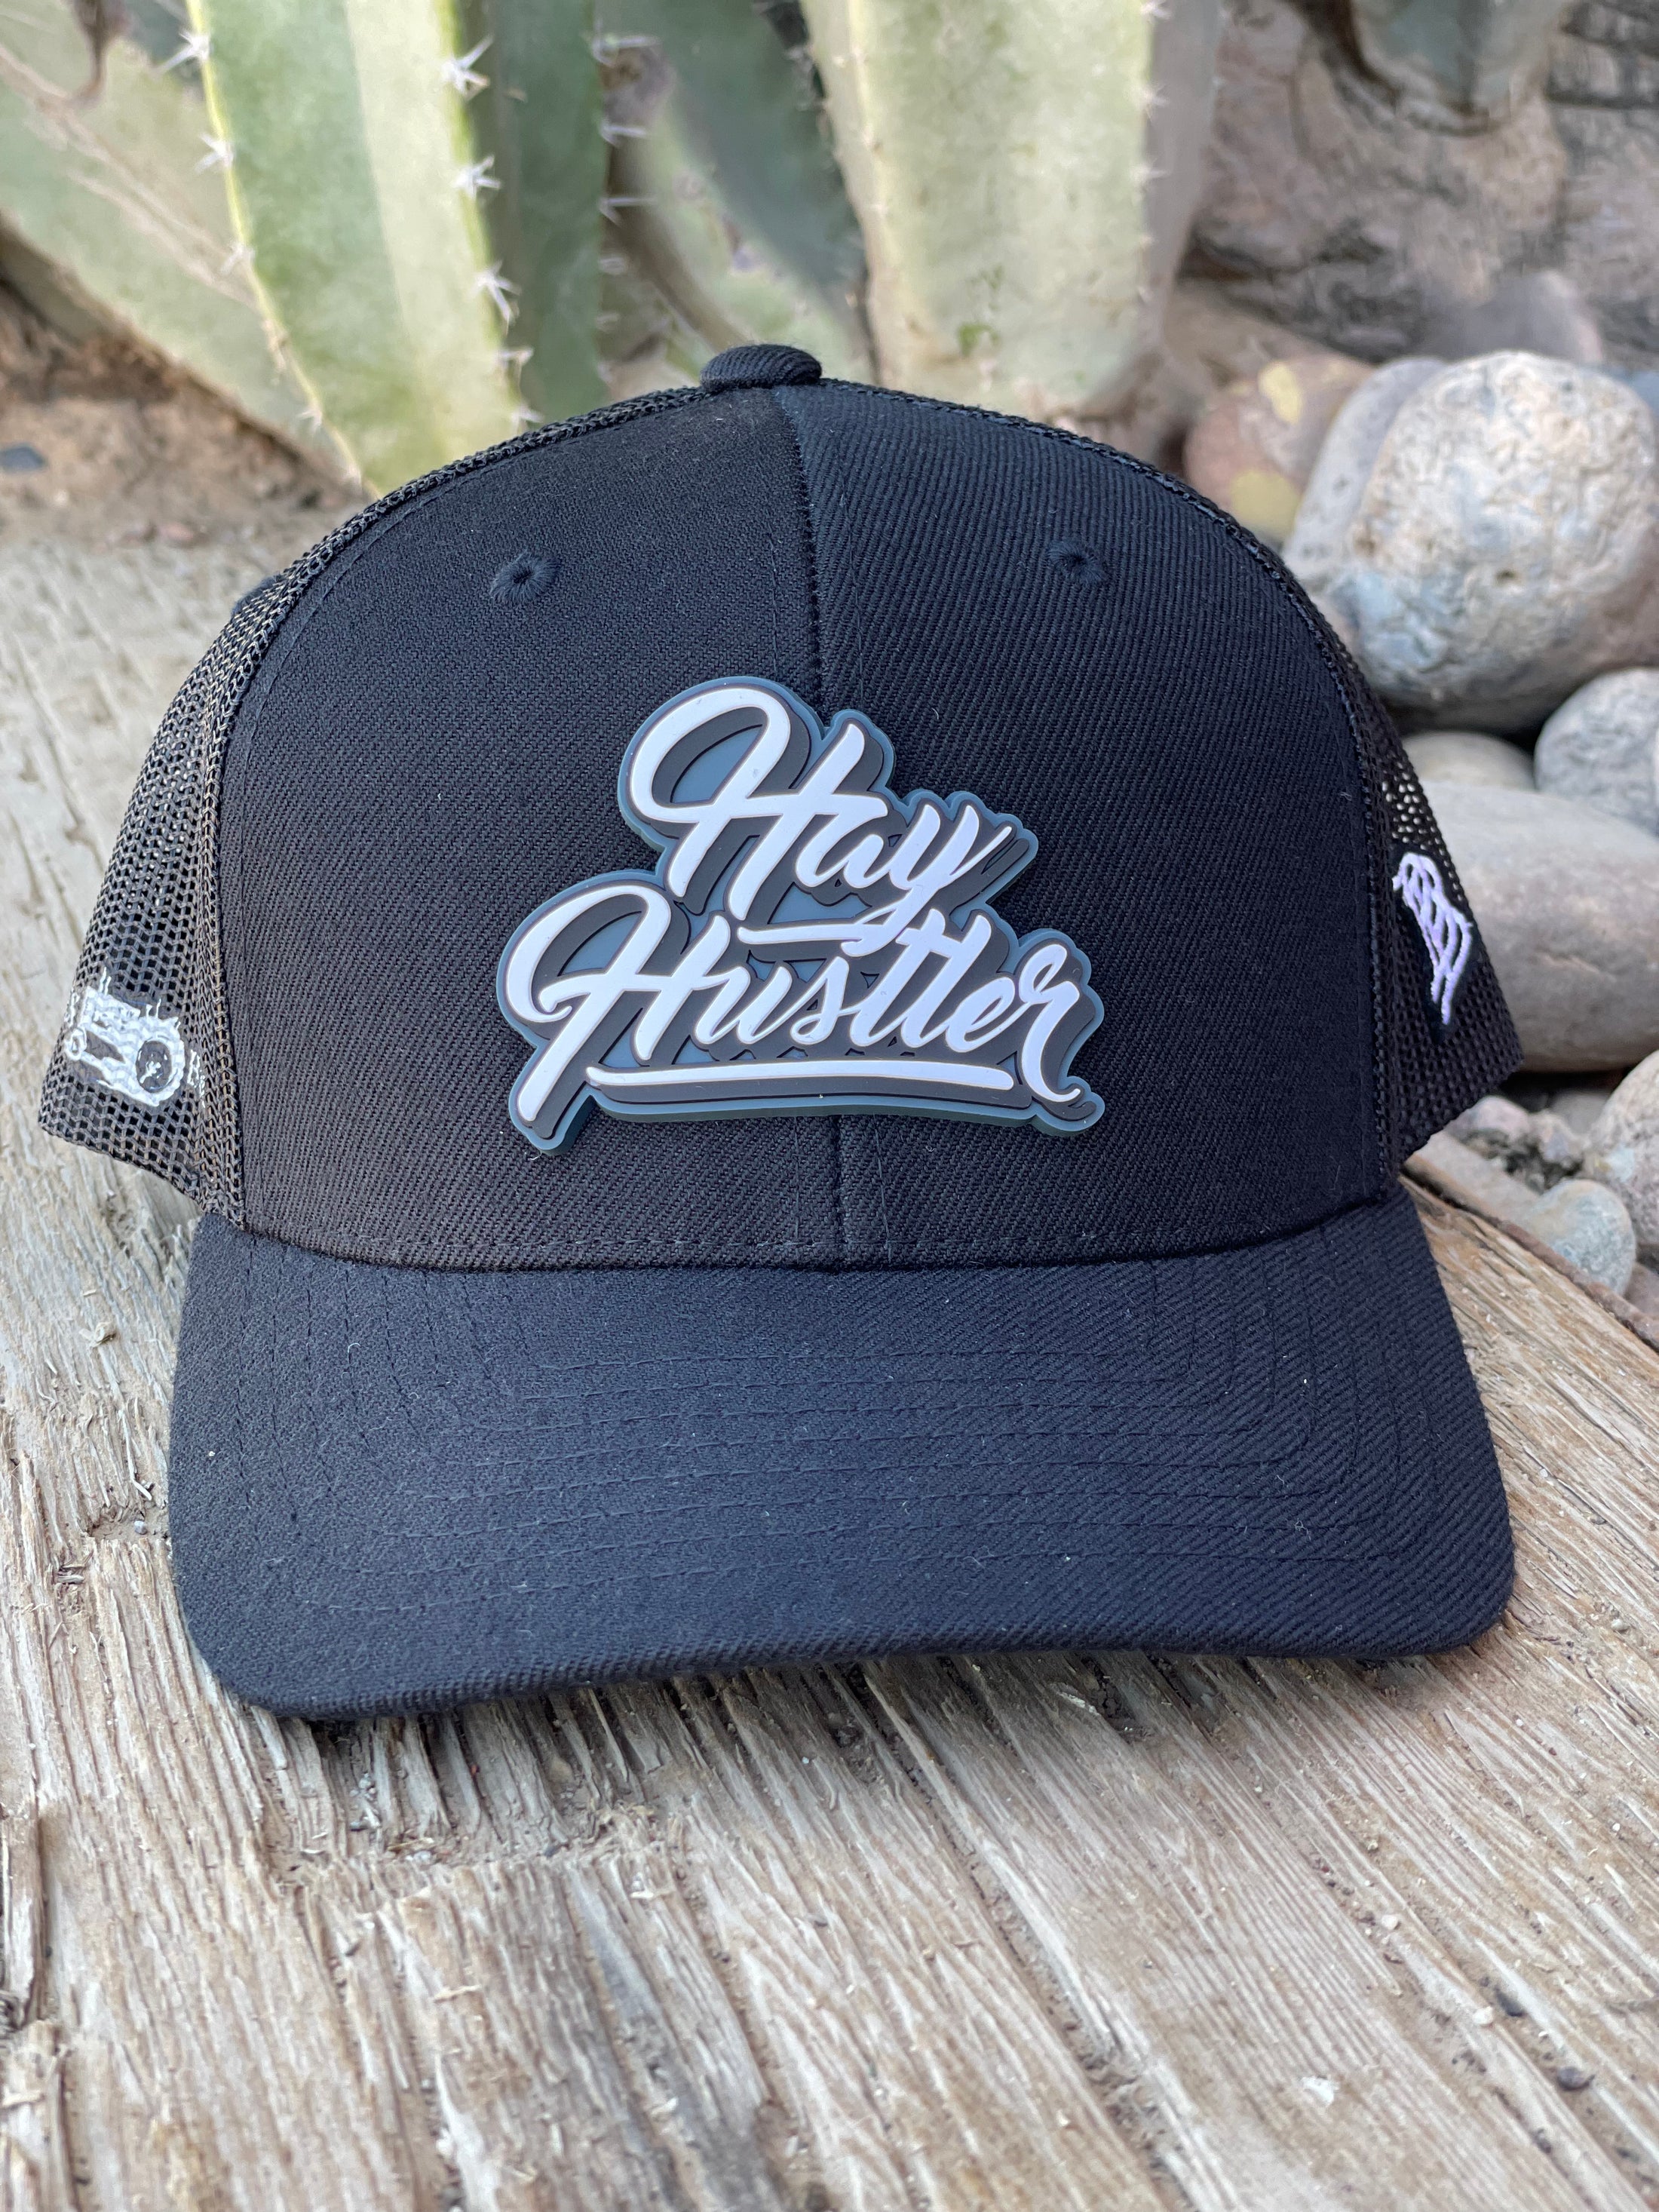 Hay Hustler Stamp Hat